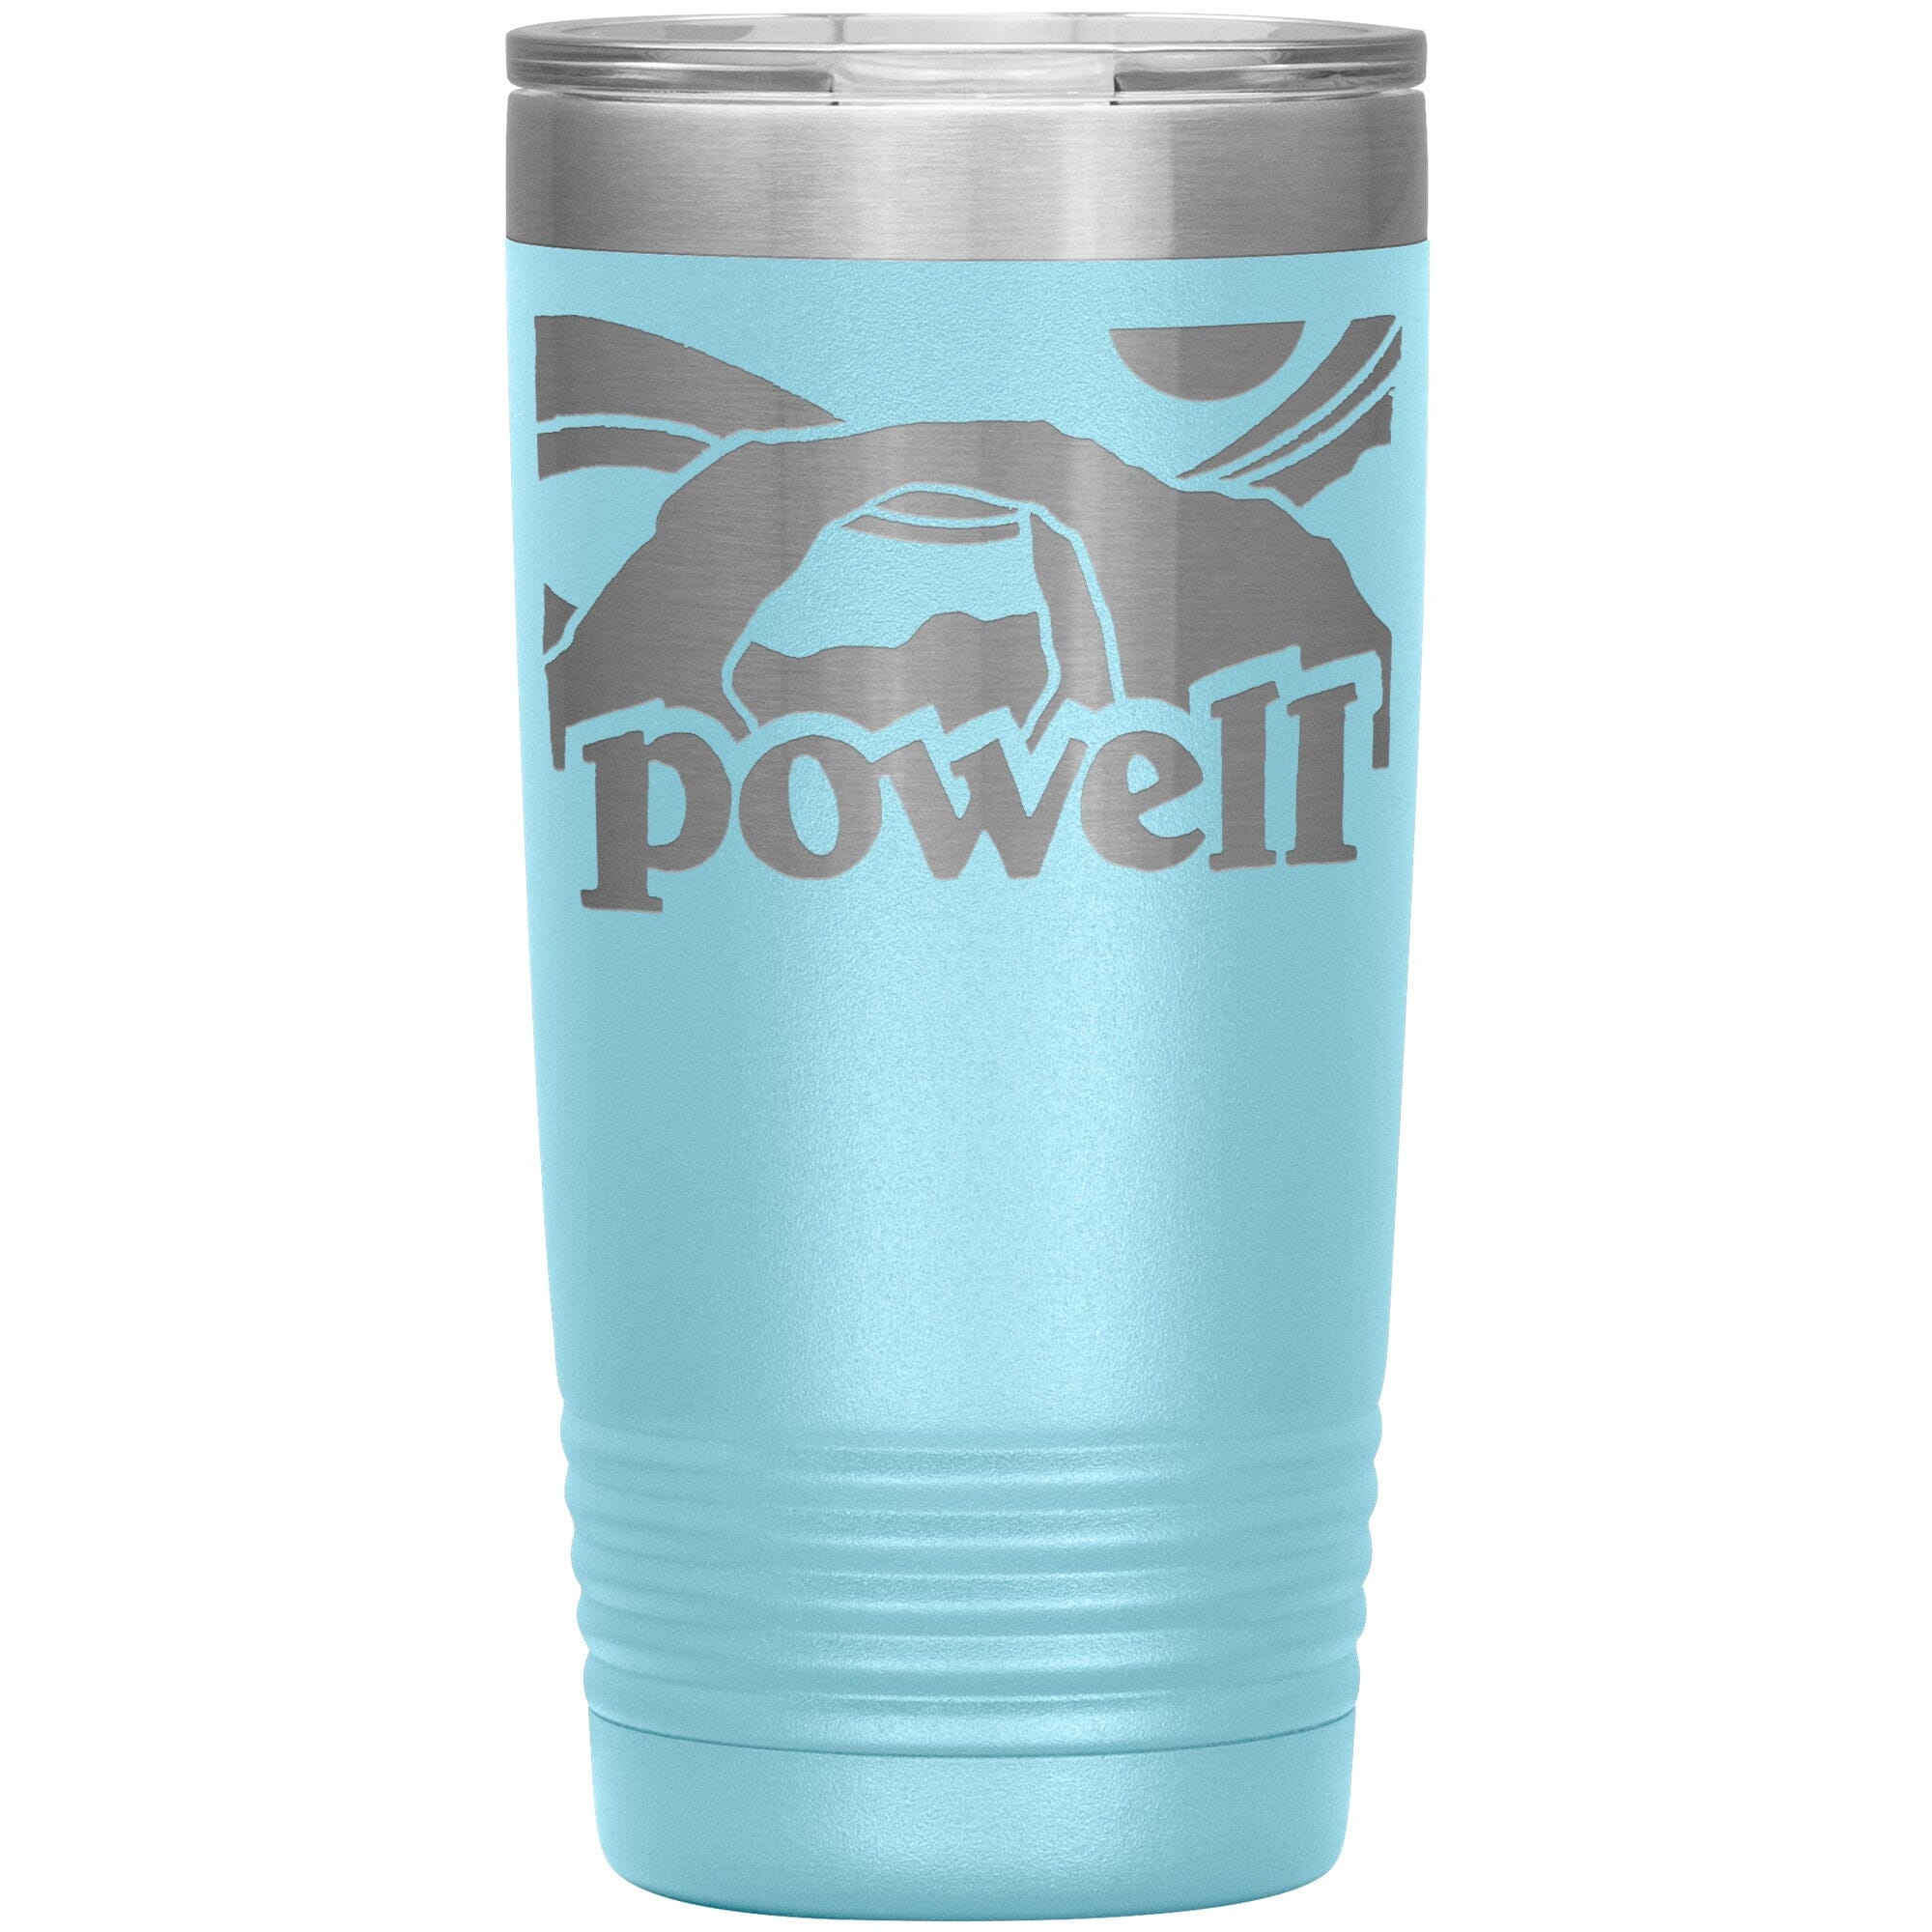 Retro Powell 20oz Tumbler Tumblers Light Blue 